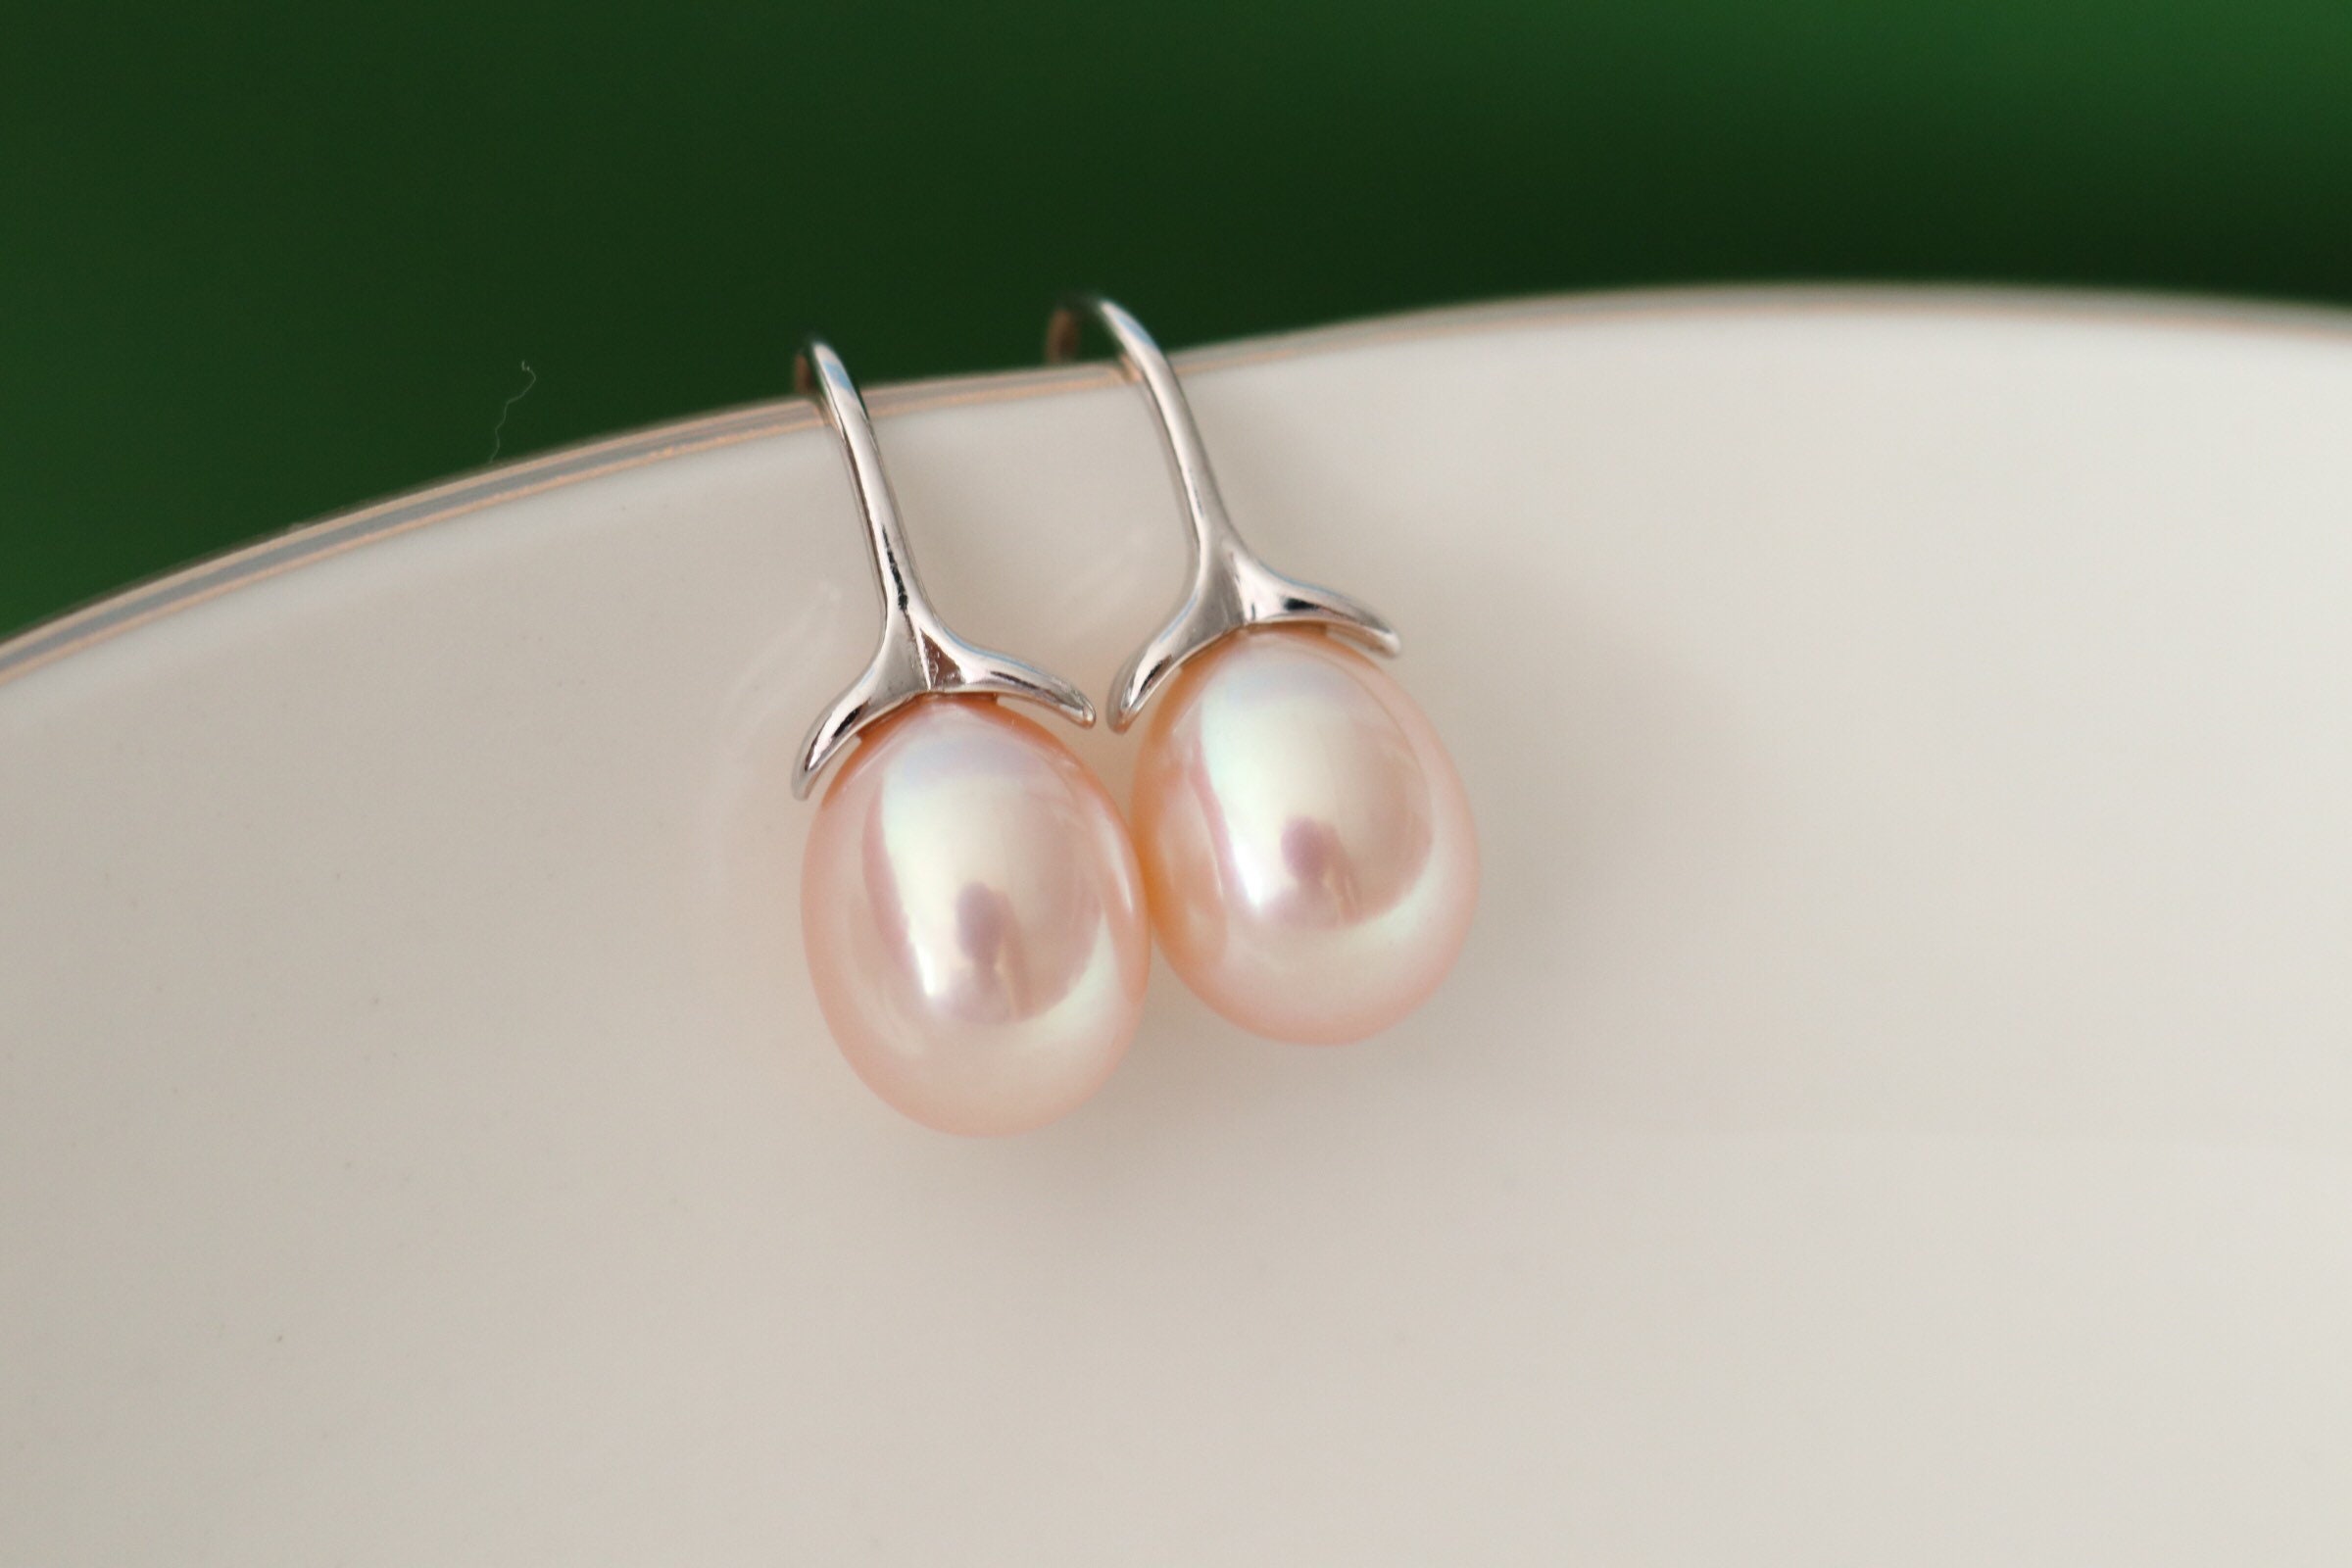 521pcs/box Earrings Hooks for Jewelry Making Earring Making